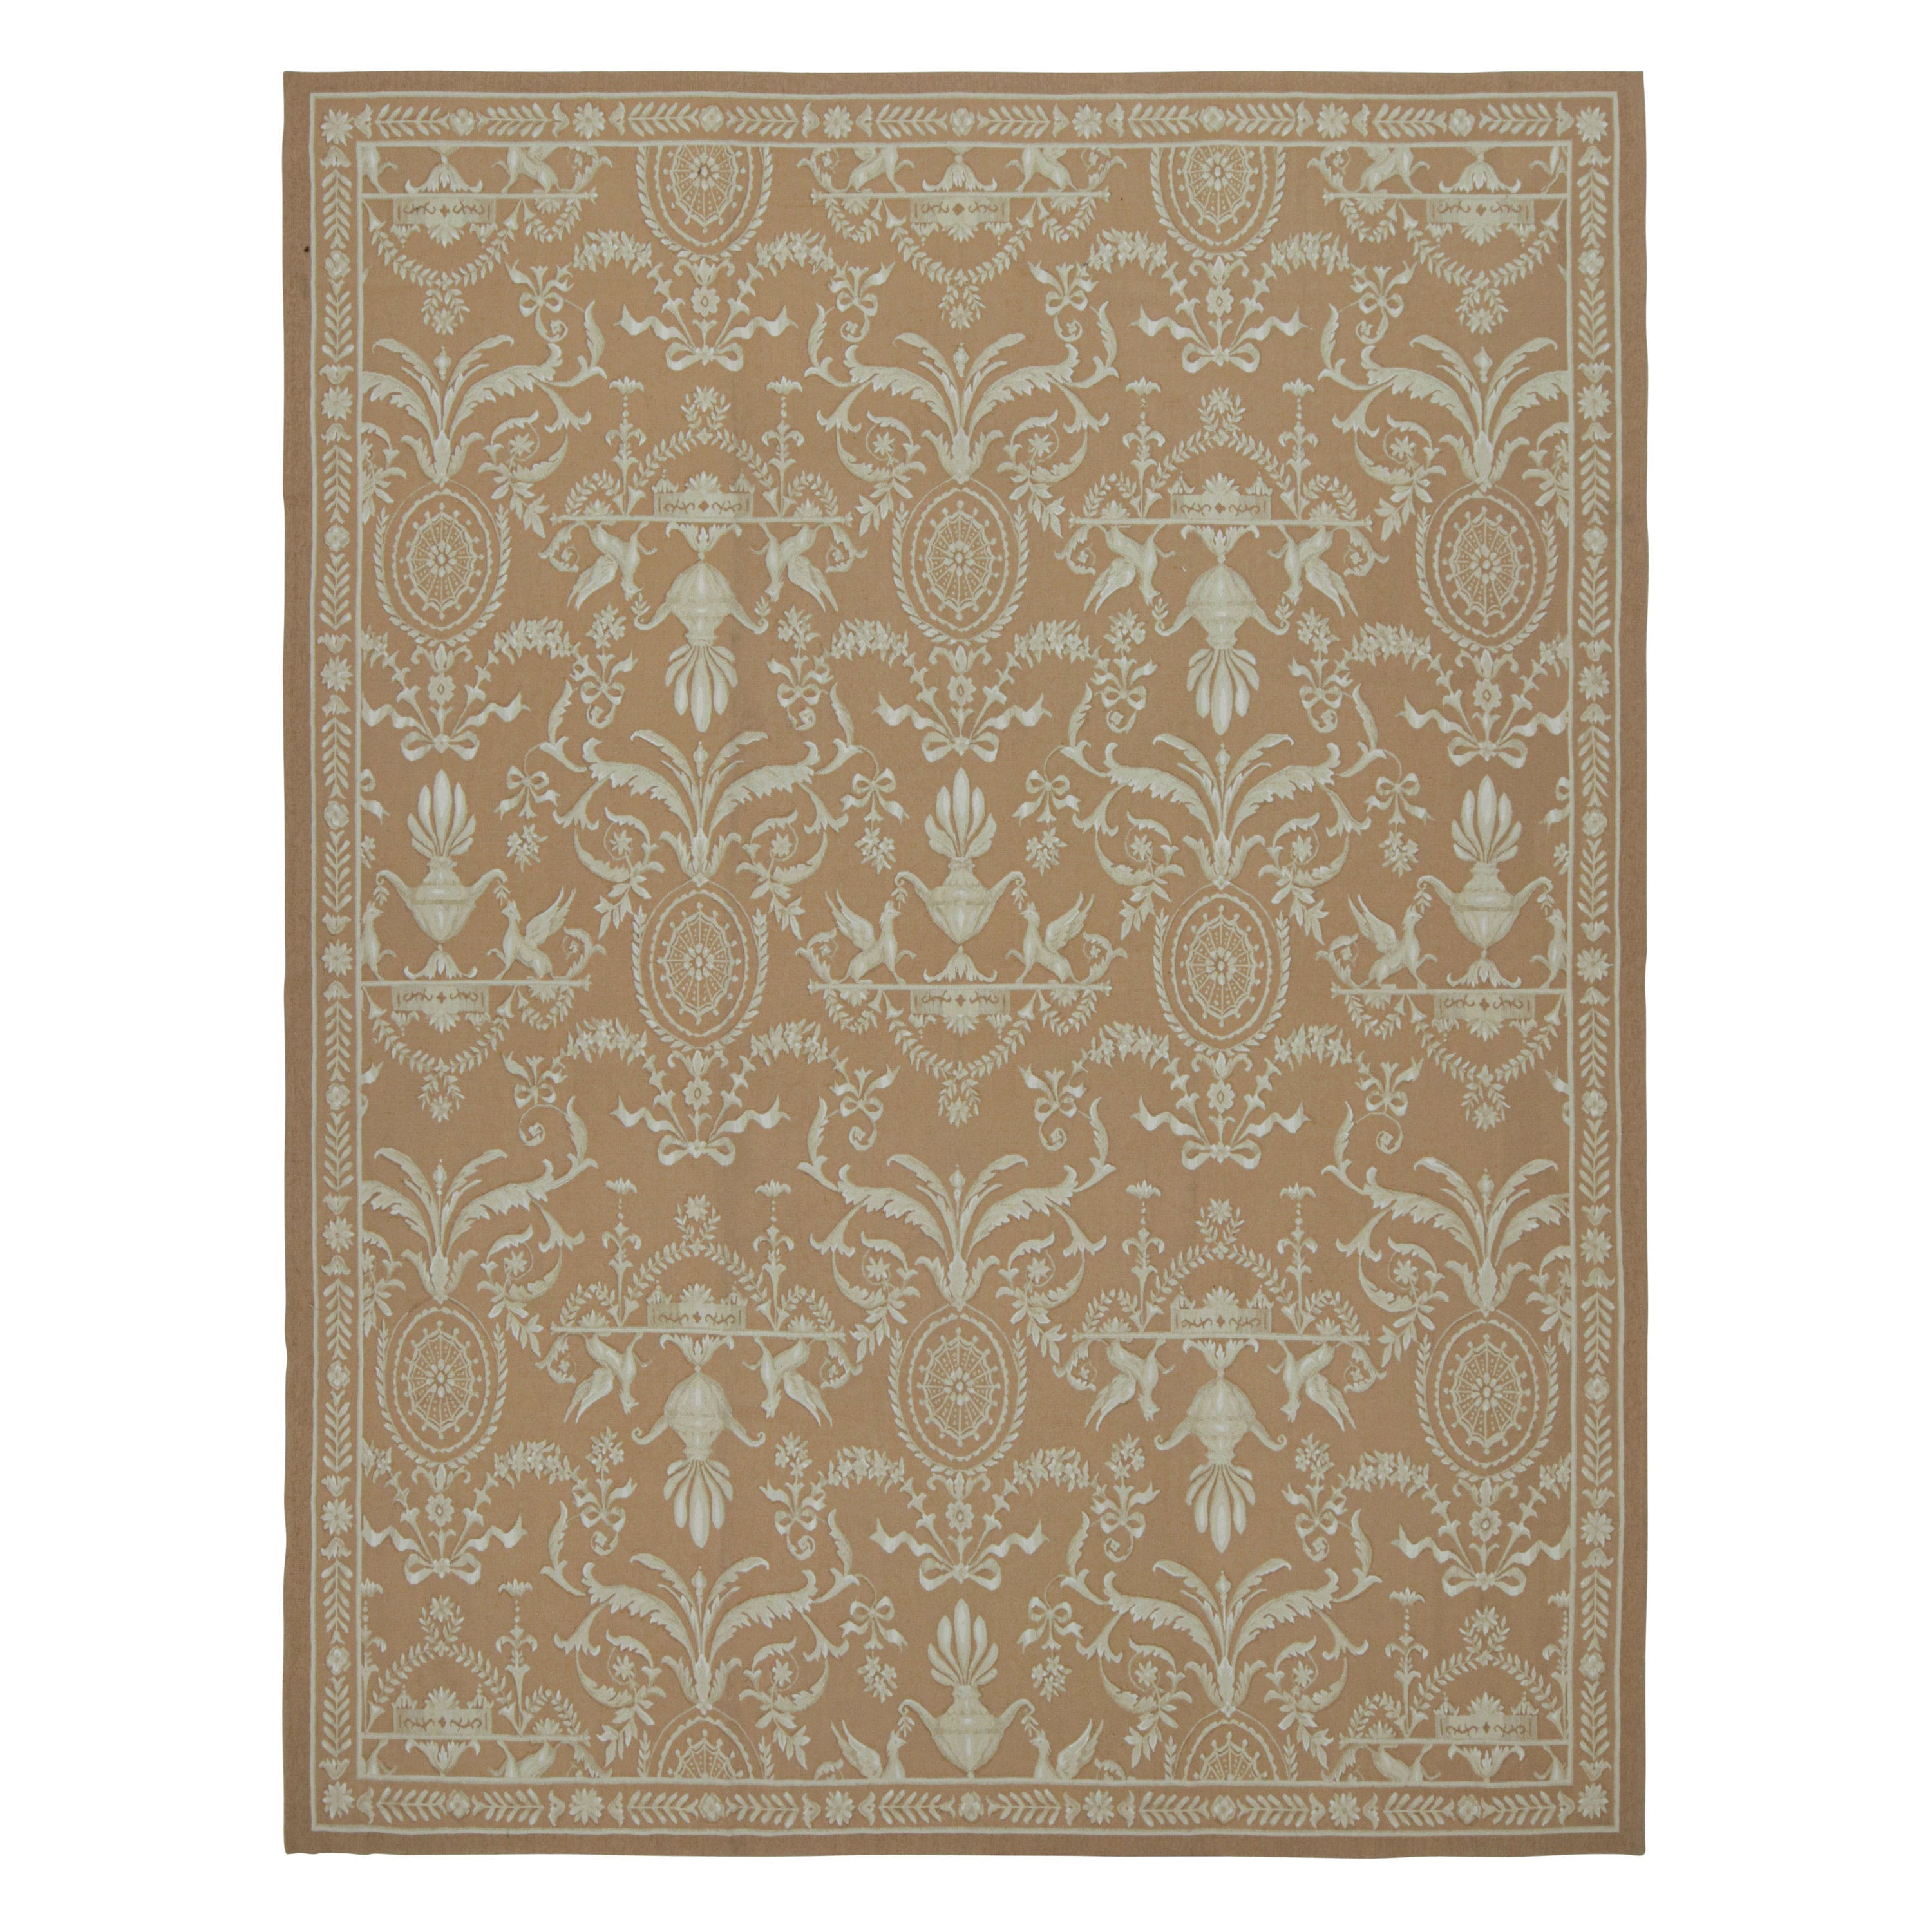 Rug & Kilim's Flachgewebe-Teppich im Aubusson-Stil in Brown mit beigefarbenen Blumenmustern